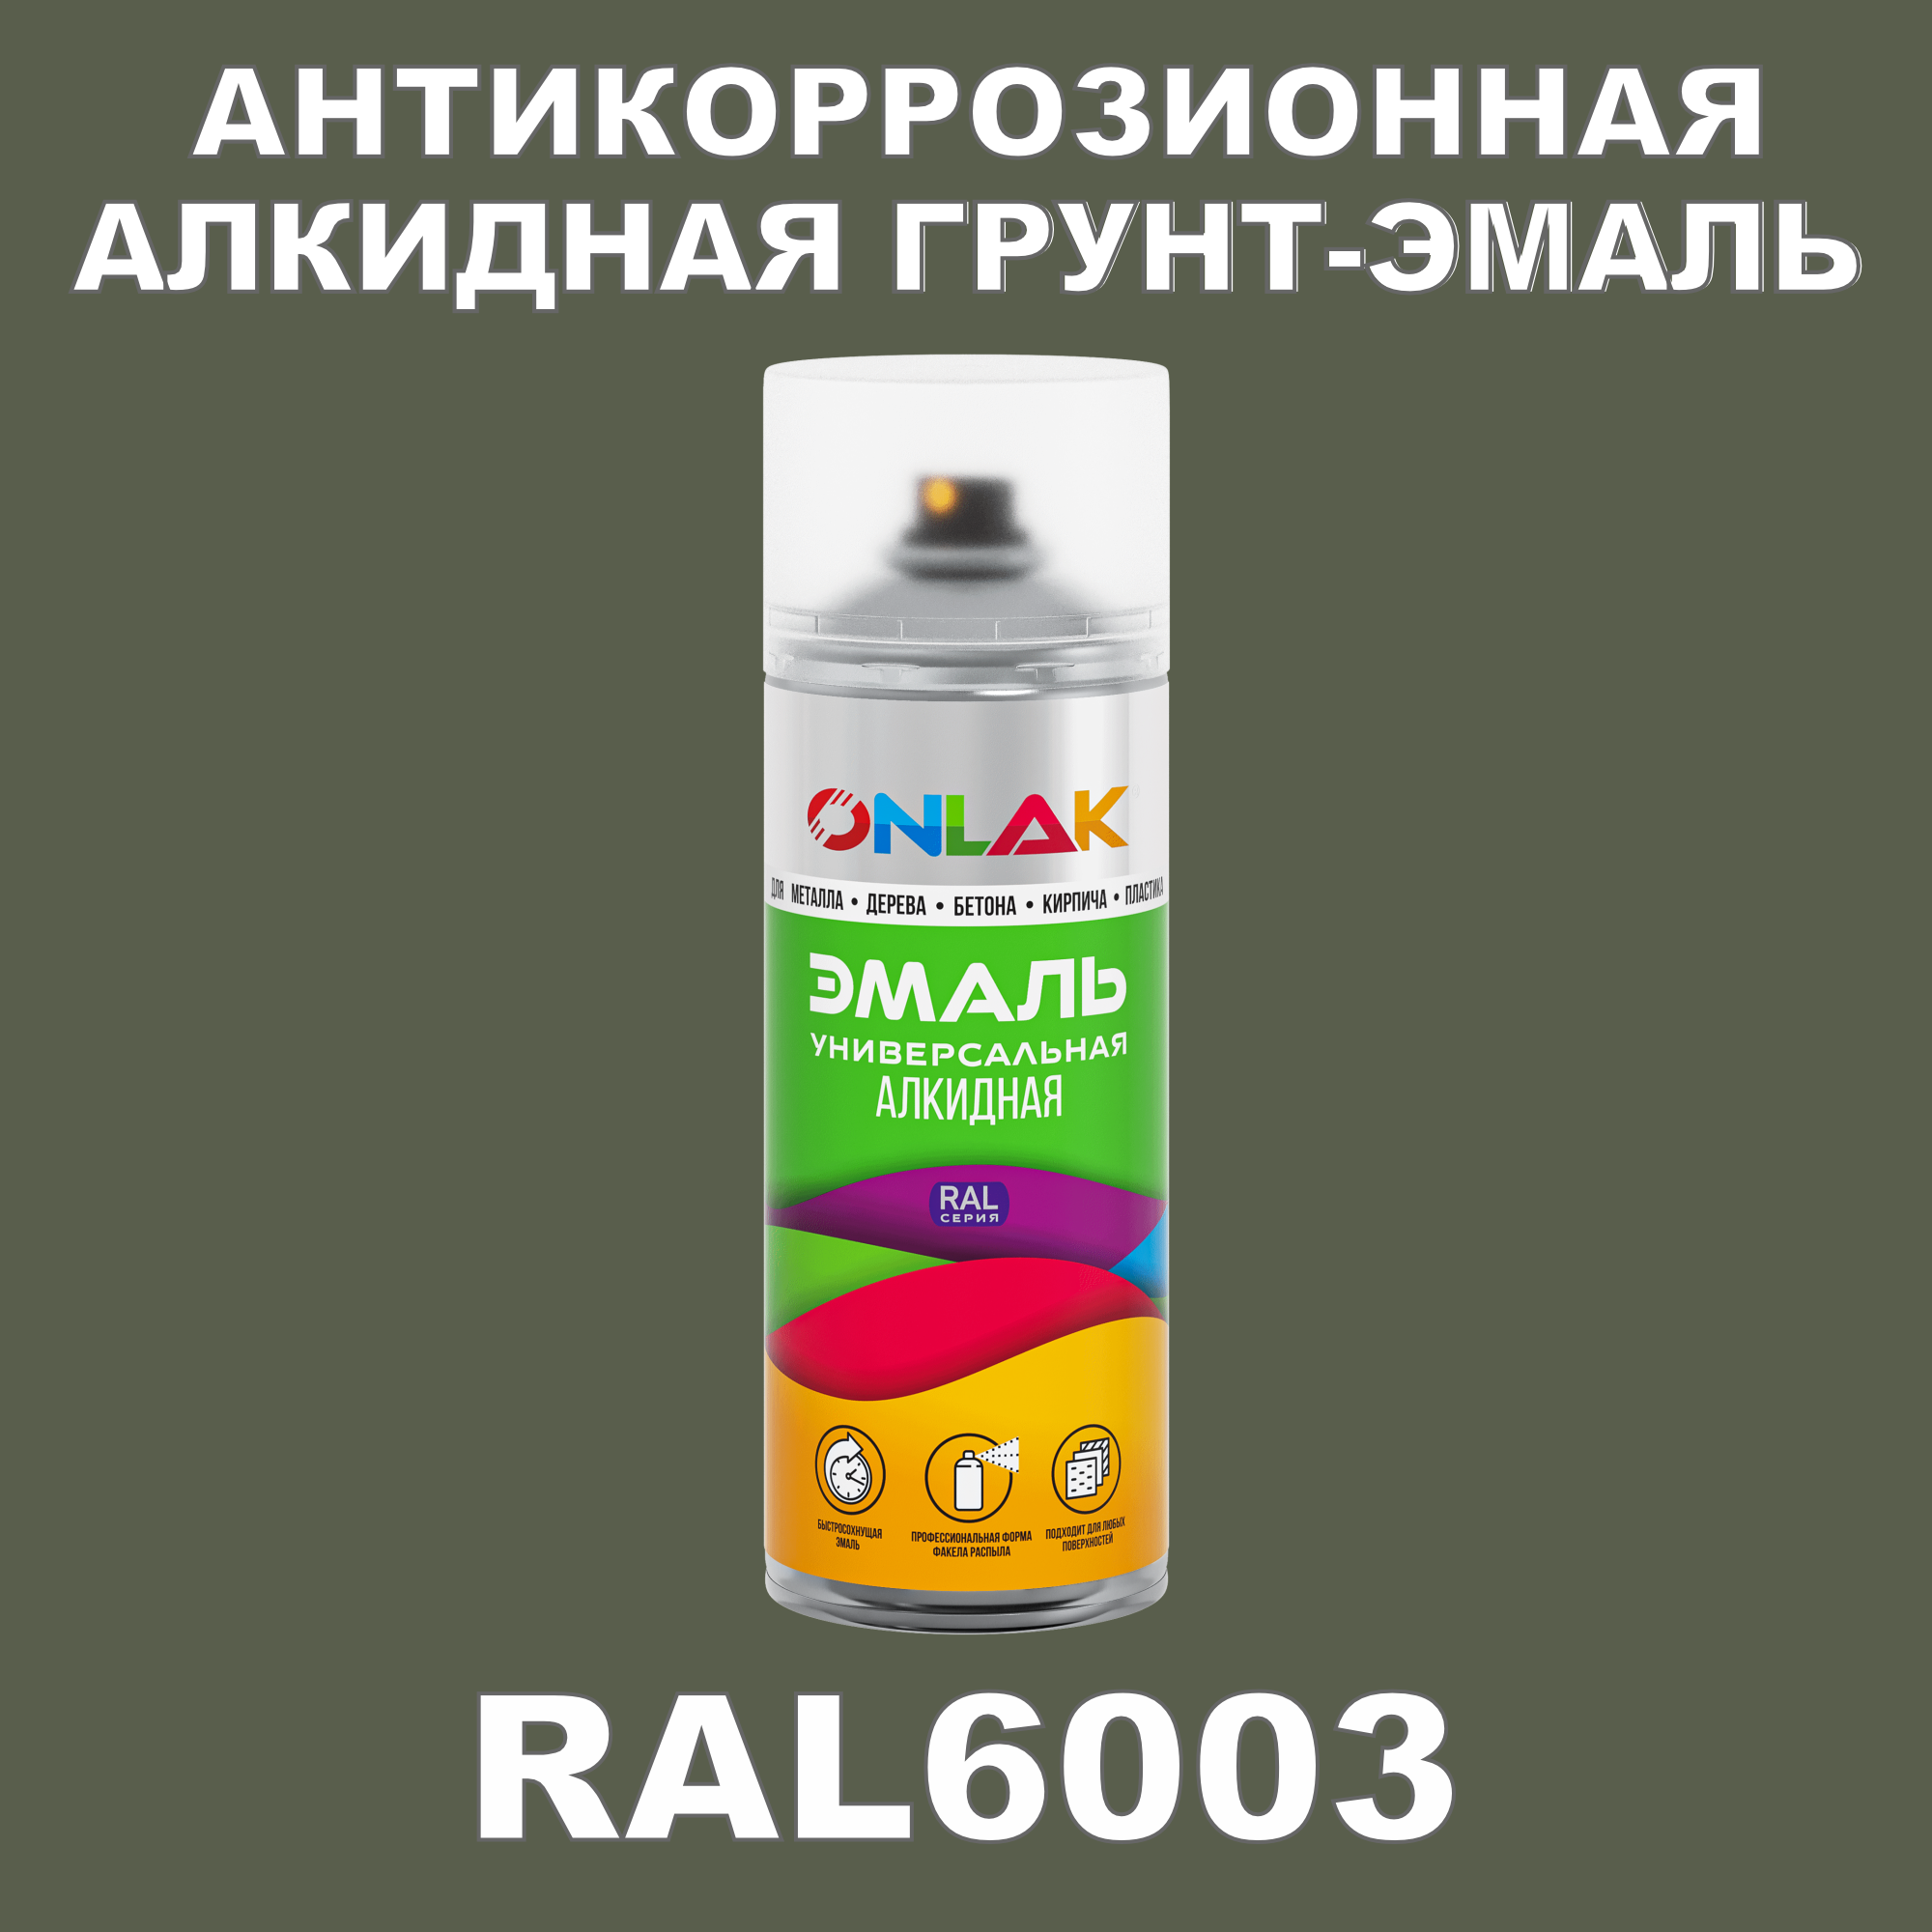 Антикоррозионная грунт-эмаль ONLAK RAL6003 полуматовая для металла и защиты от ржавчины грунт краска фасадная для osb плит и sip панелей с биозащитой полуматовая neomid